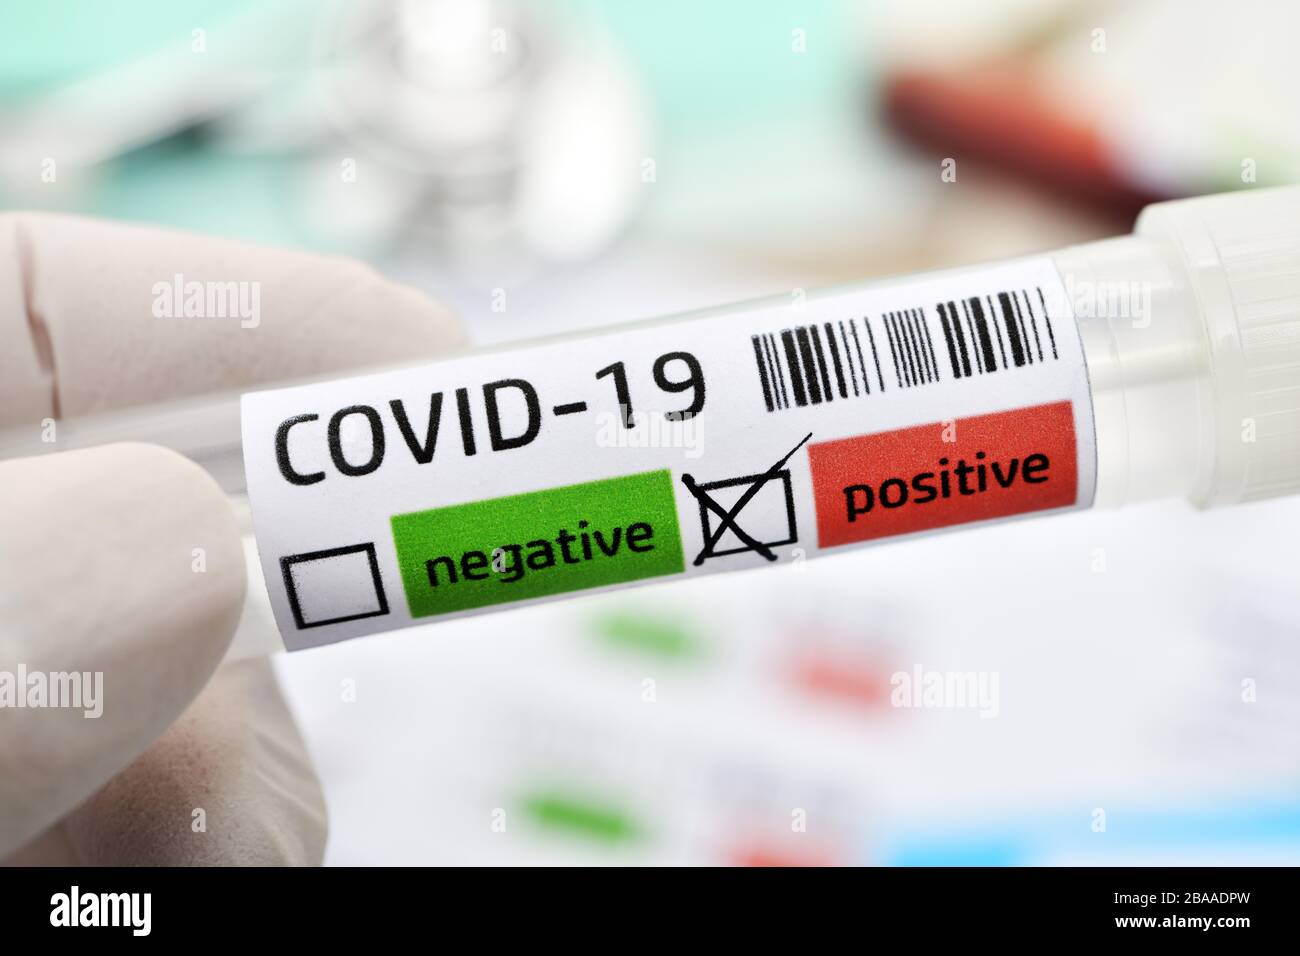 Tubi di deduzione con risultati positivi di Covid 19, foto simbolica di Coronavirus, Abstrich-Röhrchen mit positivem Covid-19-Befund, Symbolfoto Coronavirus Foto Stock